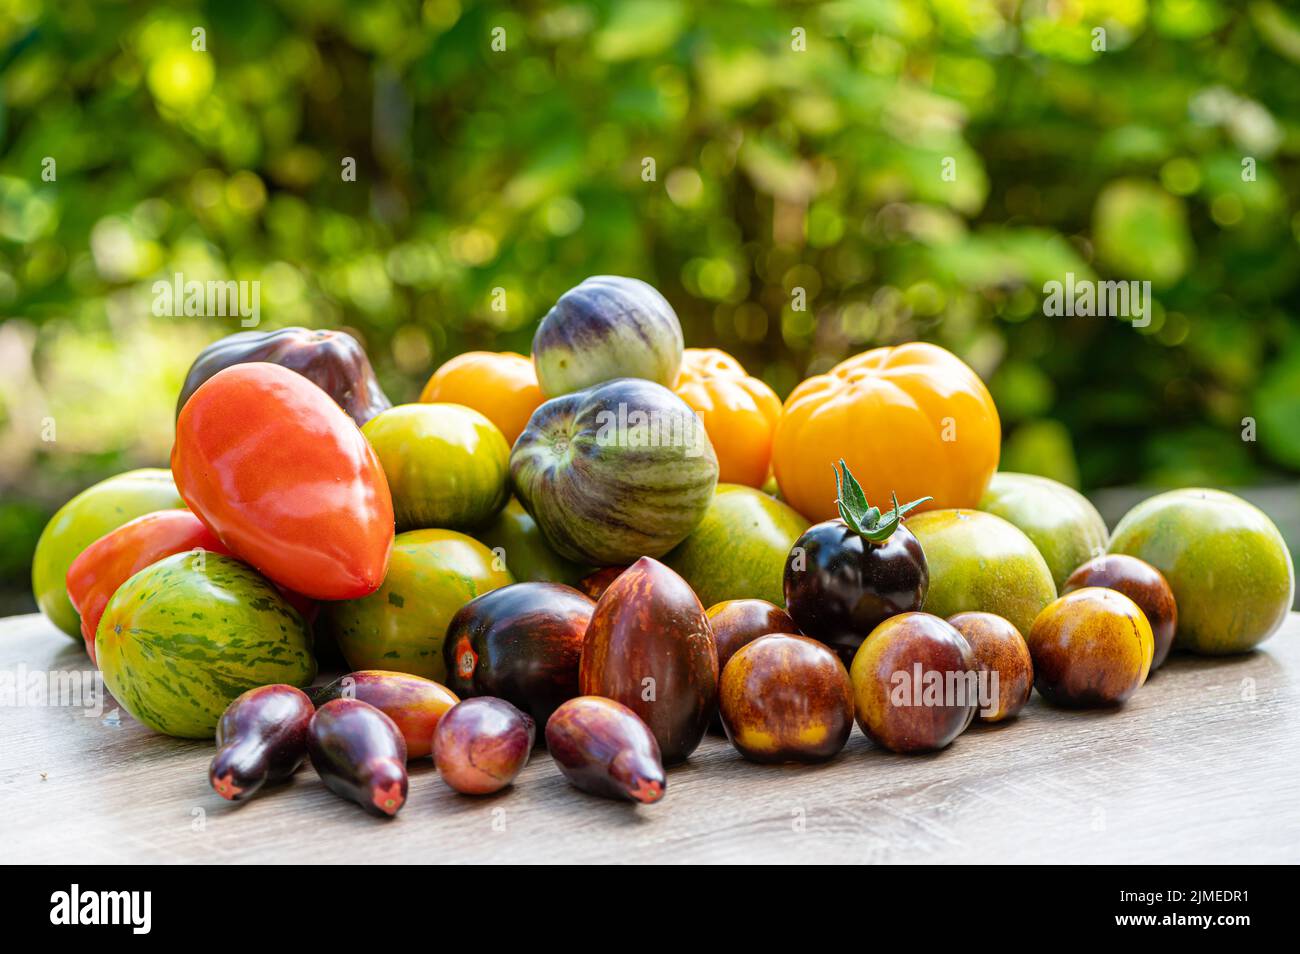 tomates fraîchement cueillies de différentes variétés et couleurs sur une table dans le jardin, en gros plan Banque D'Images